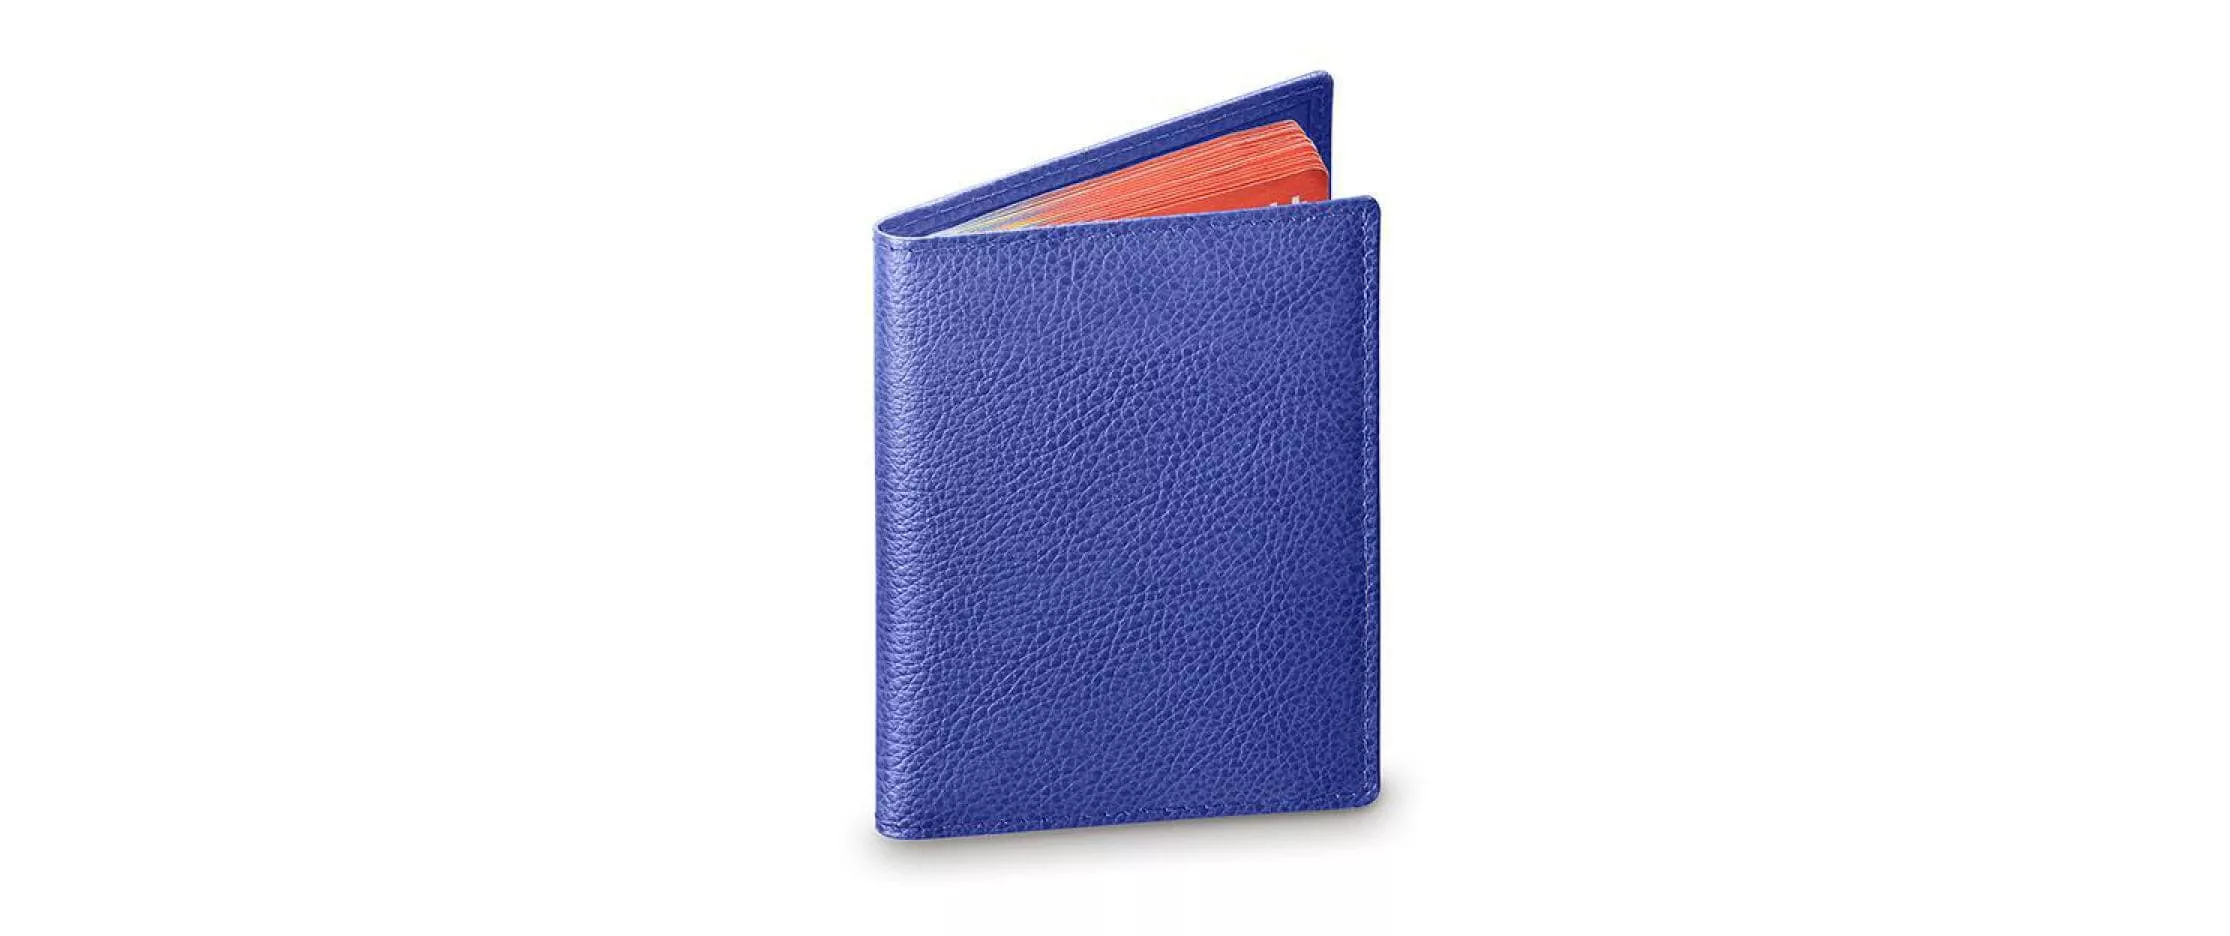 Coperta protettiva per passaporto blu reale